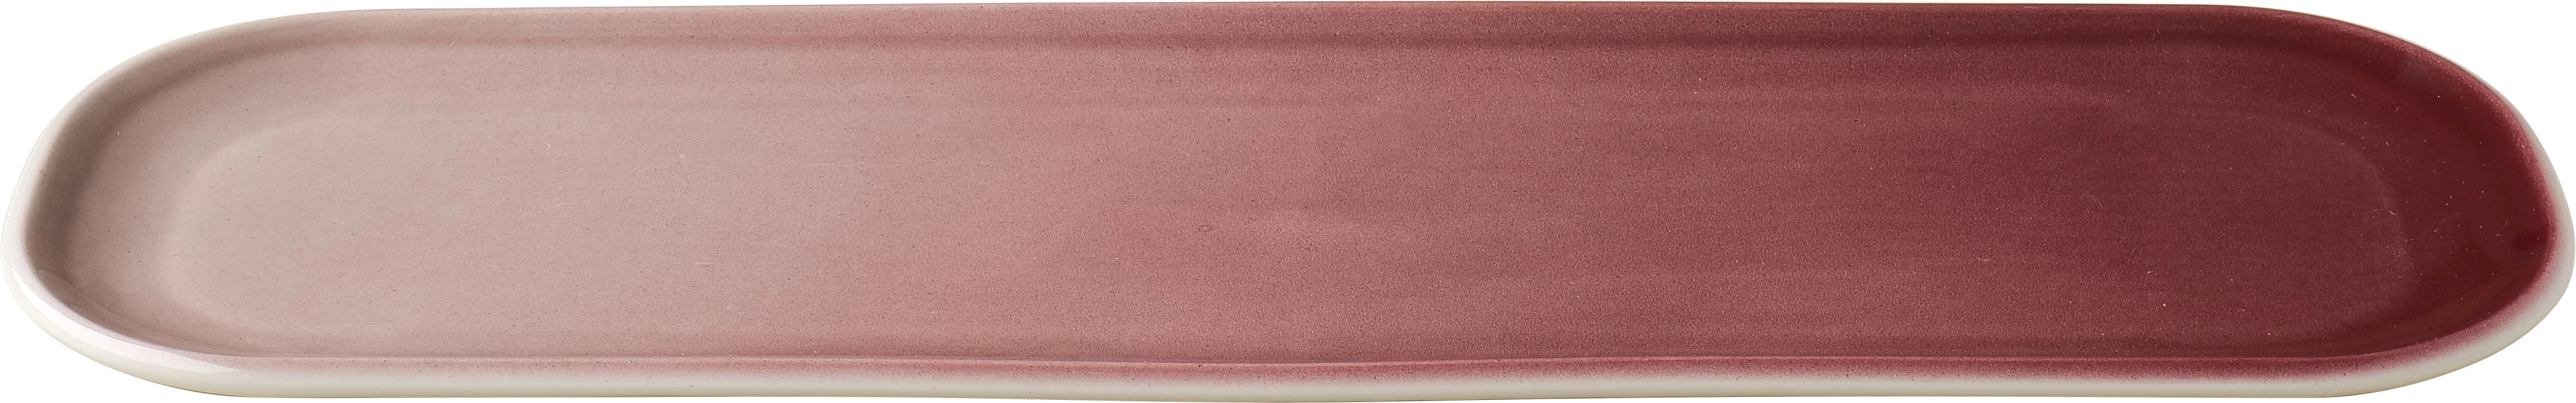 Figgjo Pax fad, oval, rød, 41 x 13 cm